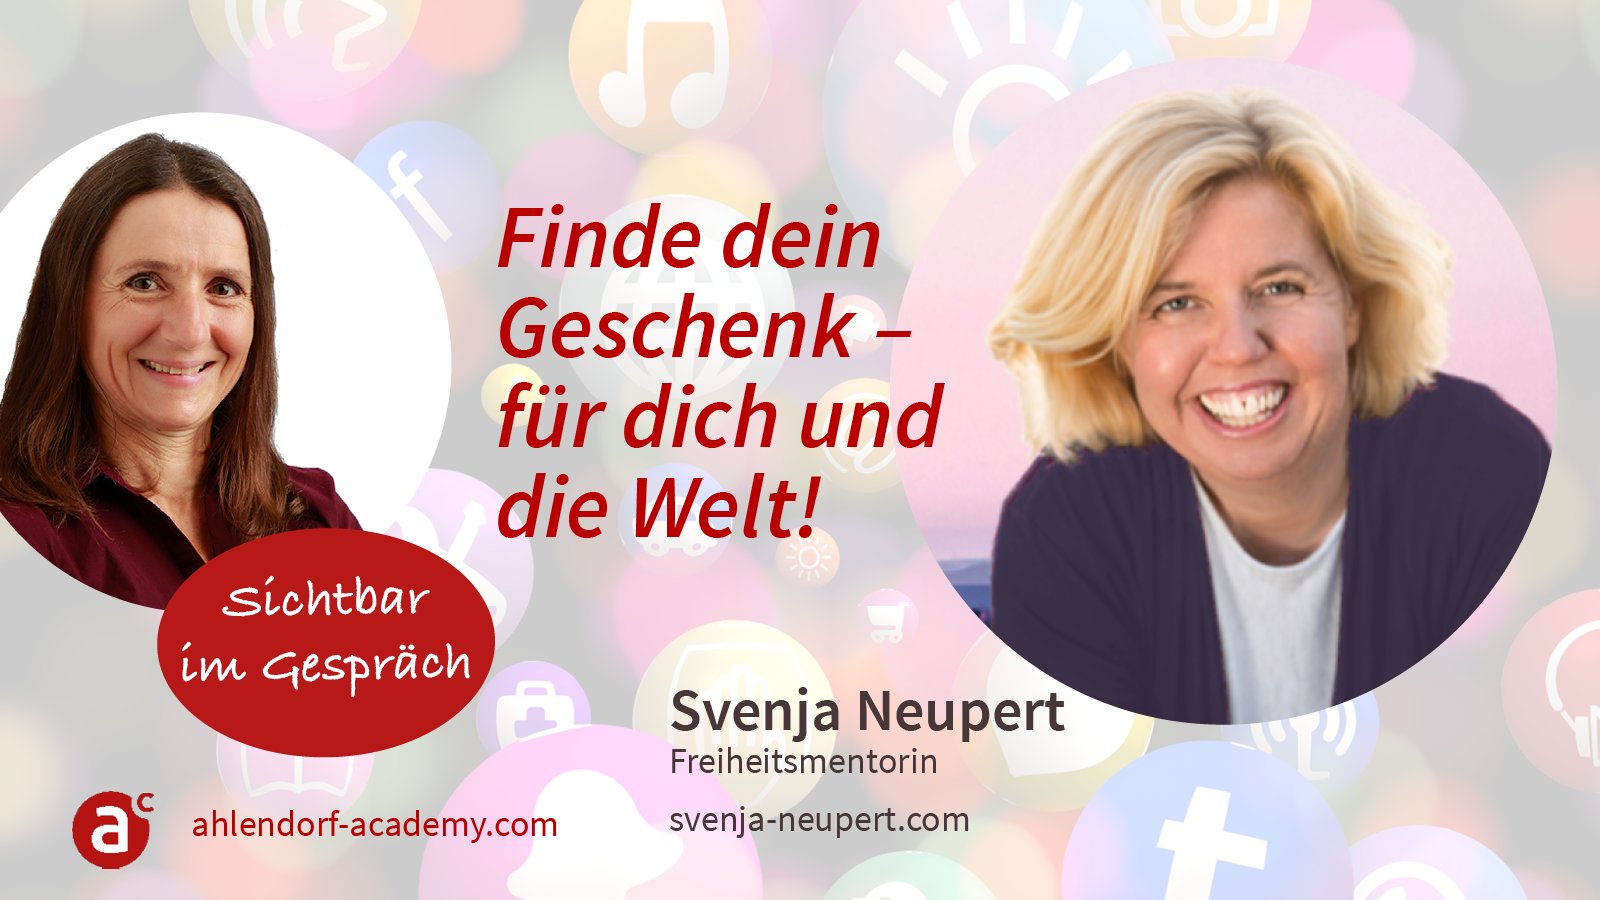 Sichtbar im Gespräch mit Svenja Neupert: Finde dein Geschenk - für dich und die Welt!